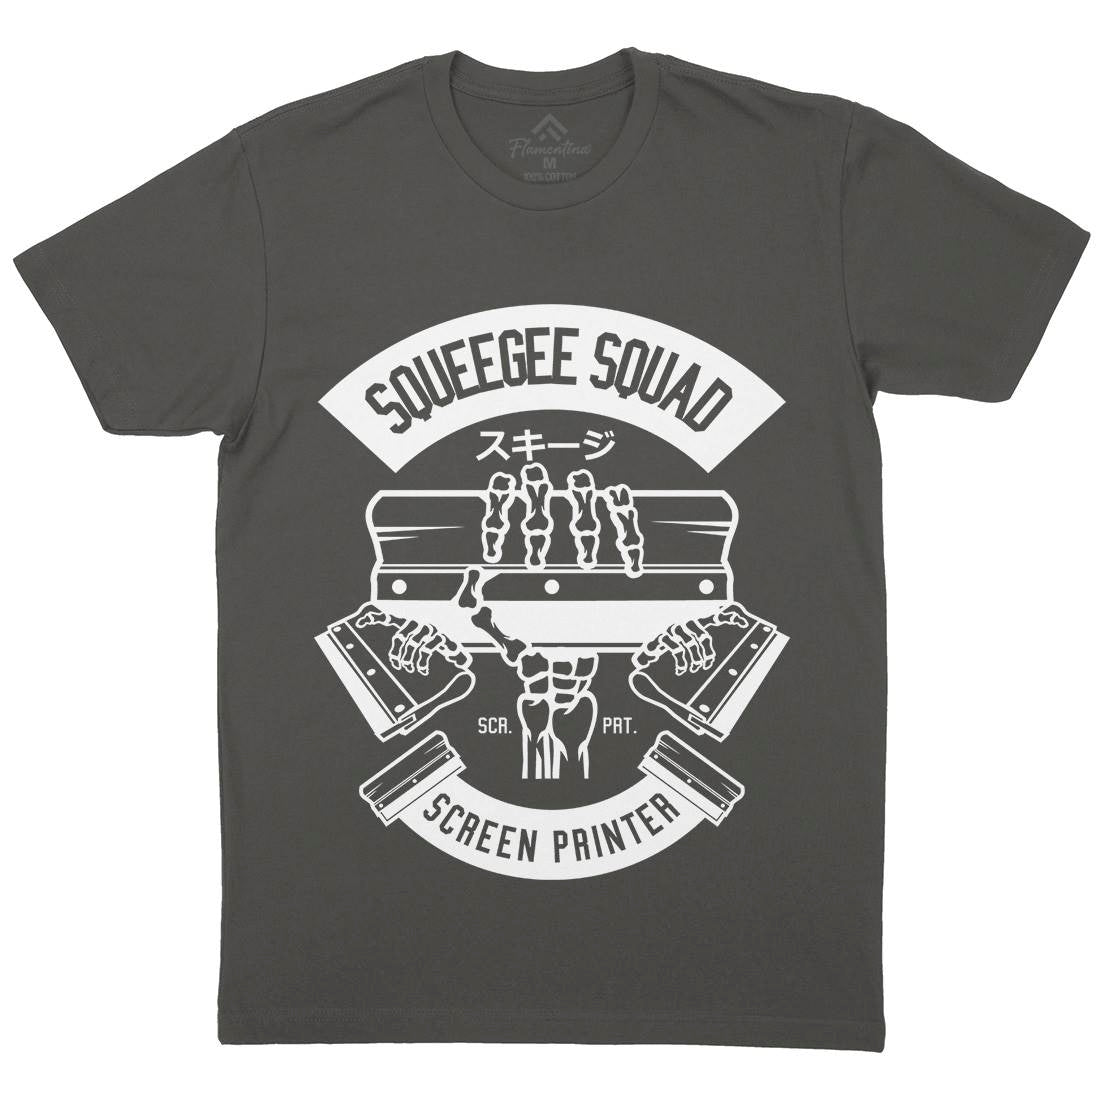 Squeegee Squad Mens Crew Neck T-Shirt Retro B642